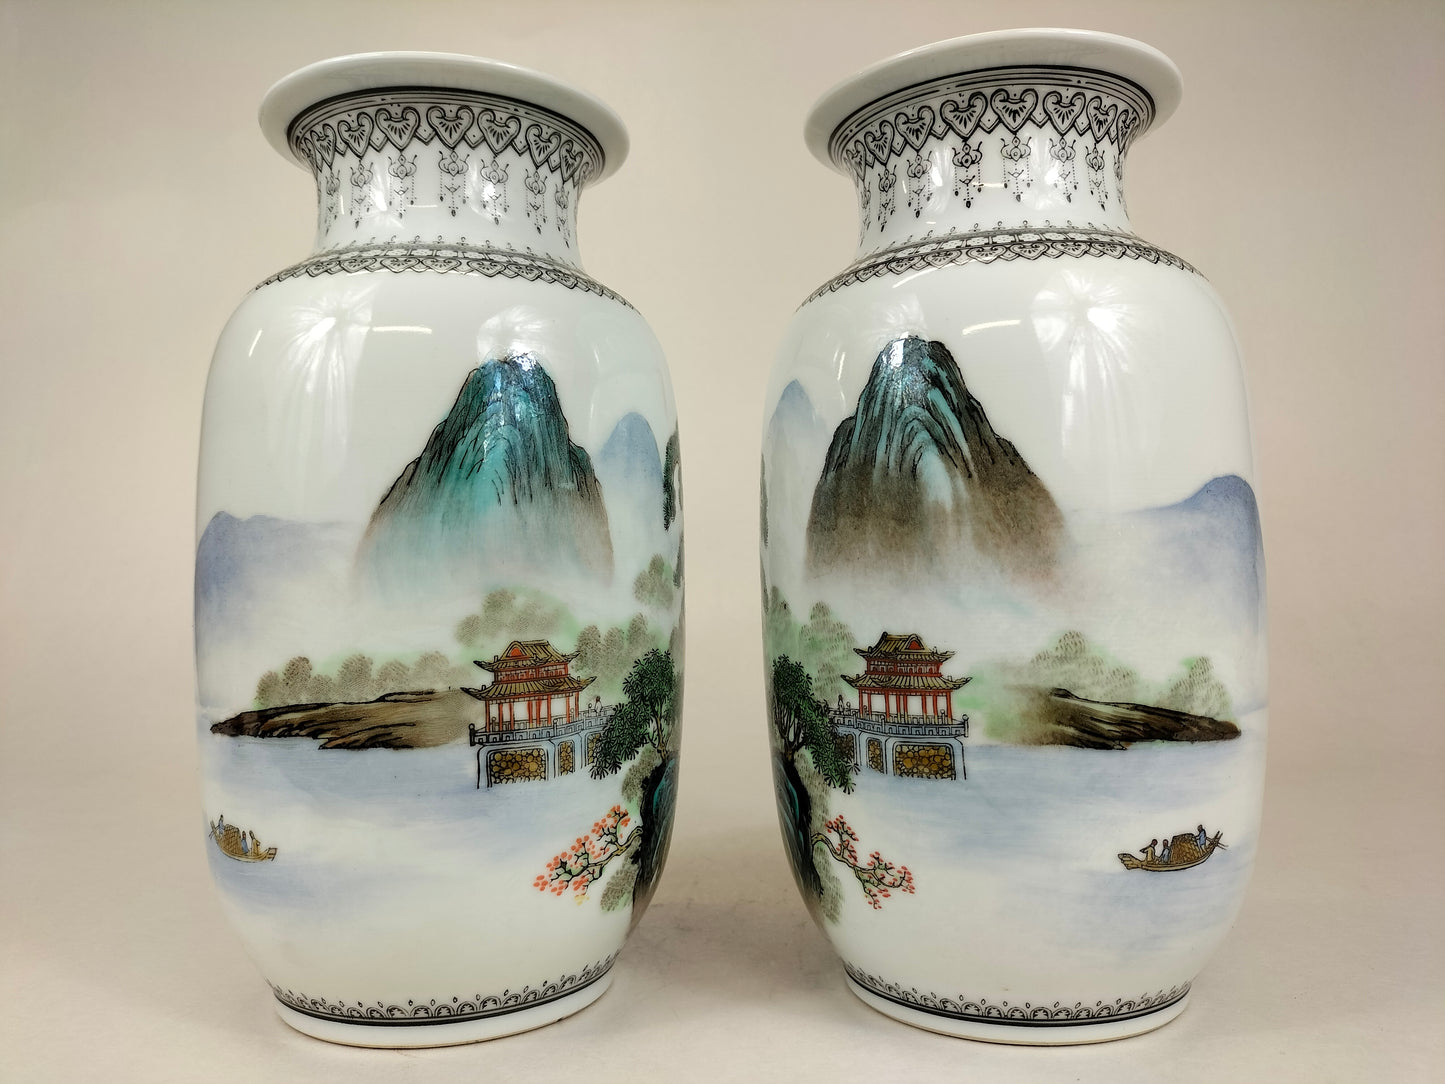 Cặp bình hoa Trung Quốc được trang trí theo phong cảnh // Cảnh Đức Trấn - thế kỷ 20